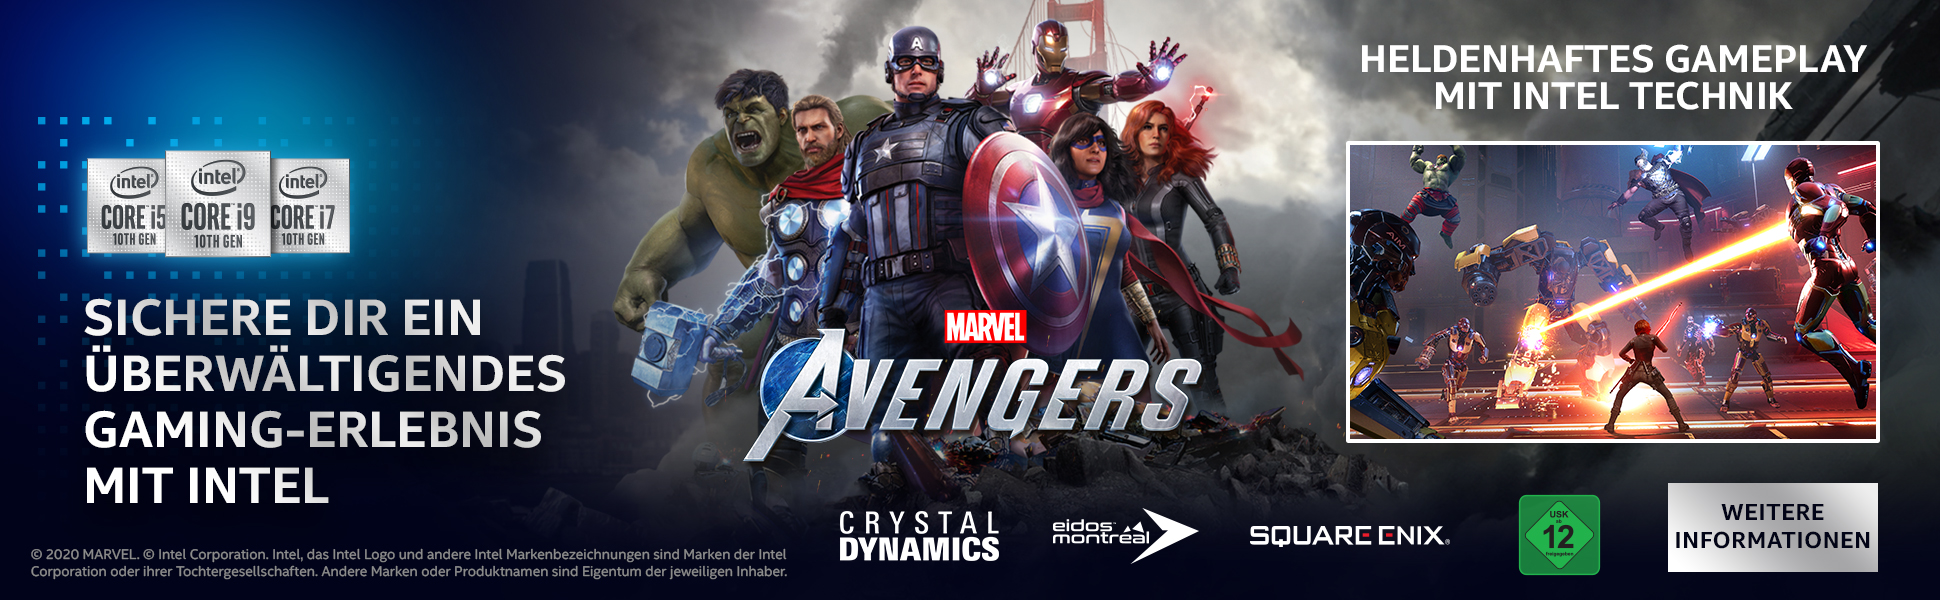 Intel_Avengers_Banner